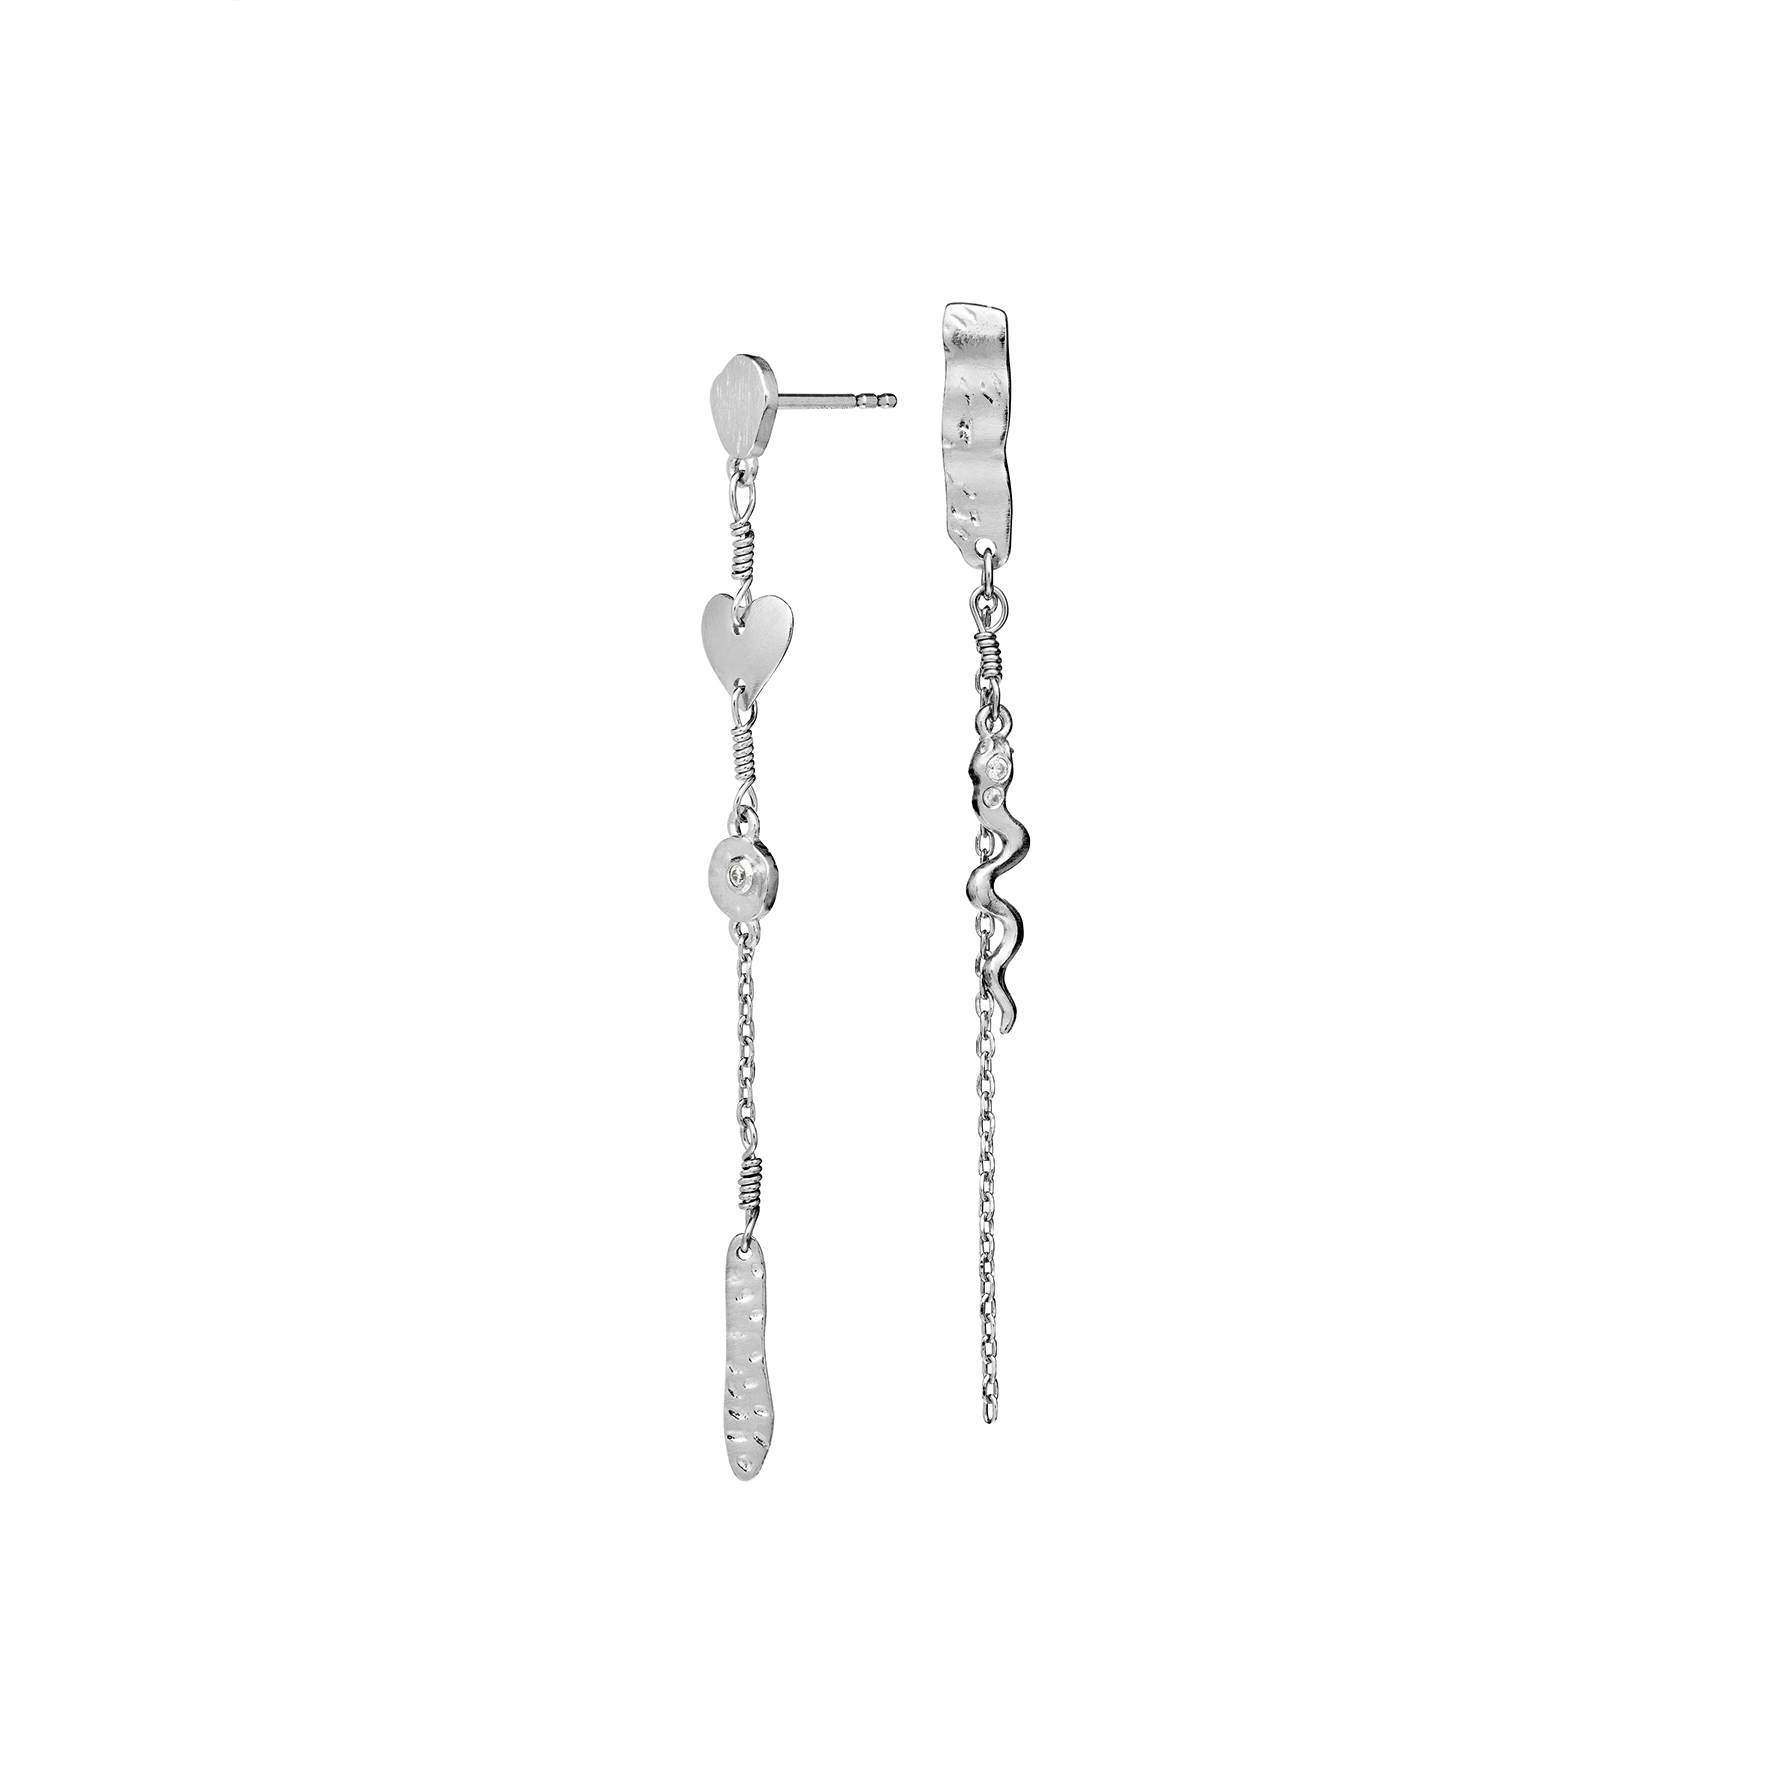 Delfine Earrings from Maanesten in Silver Sterling 925